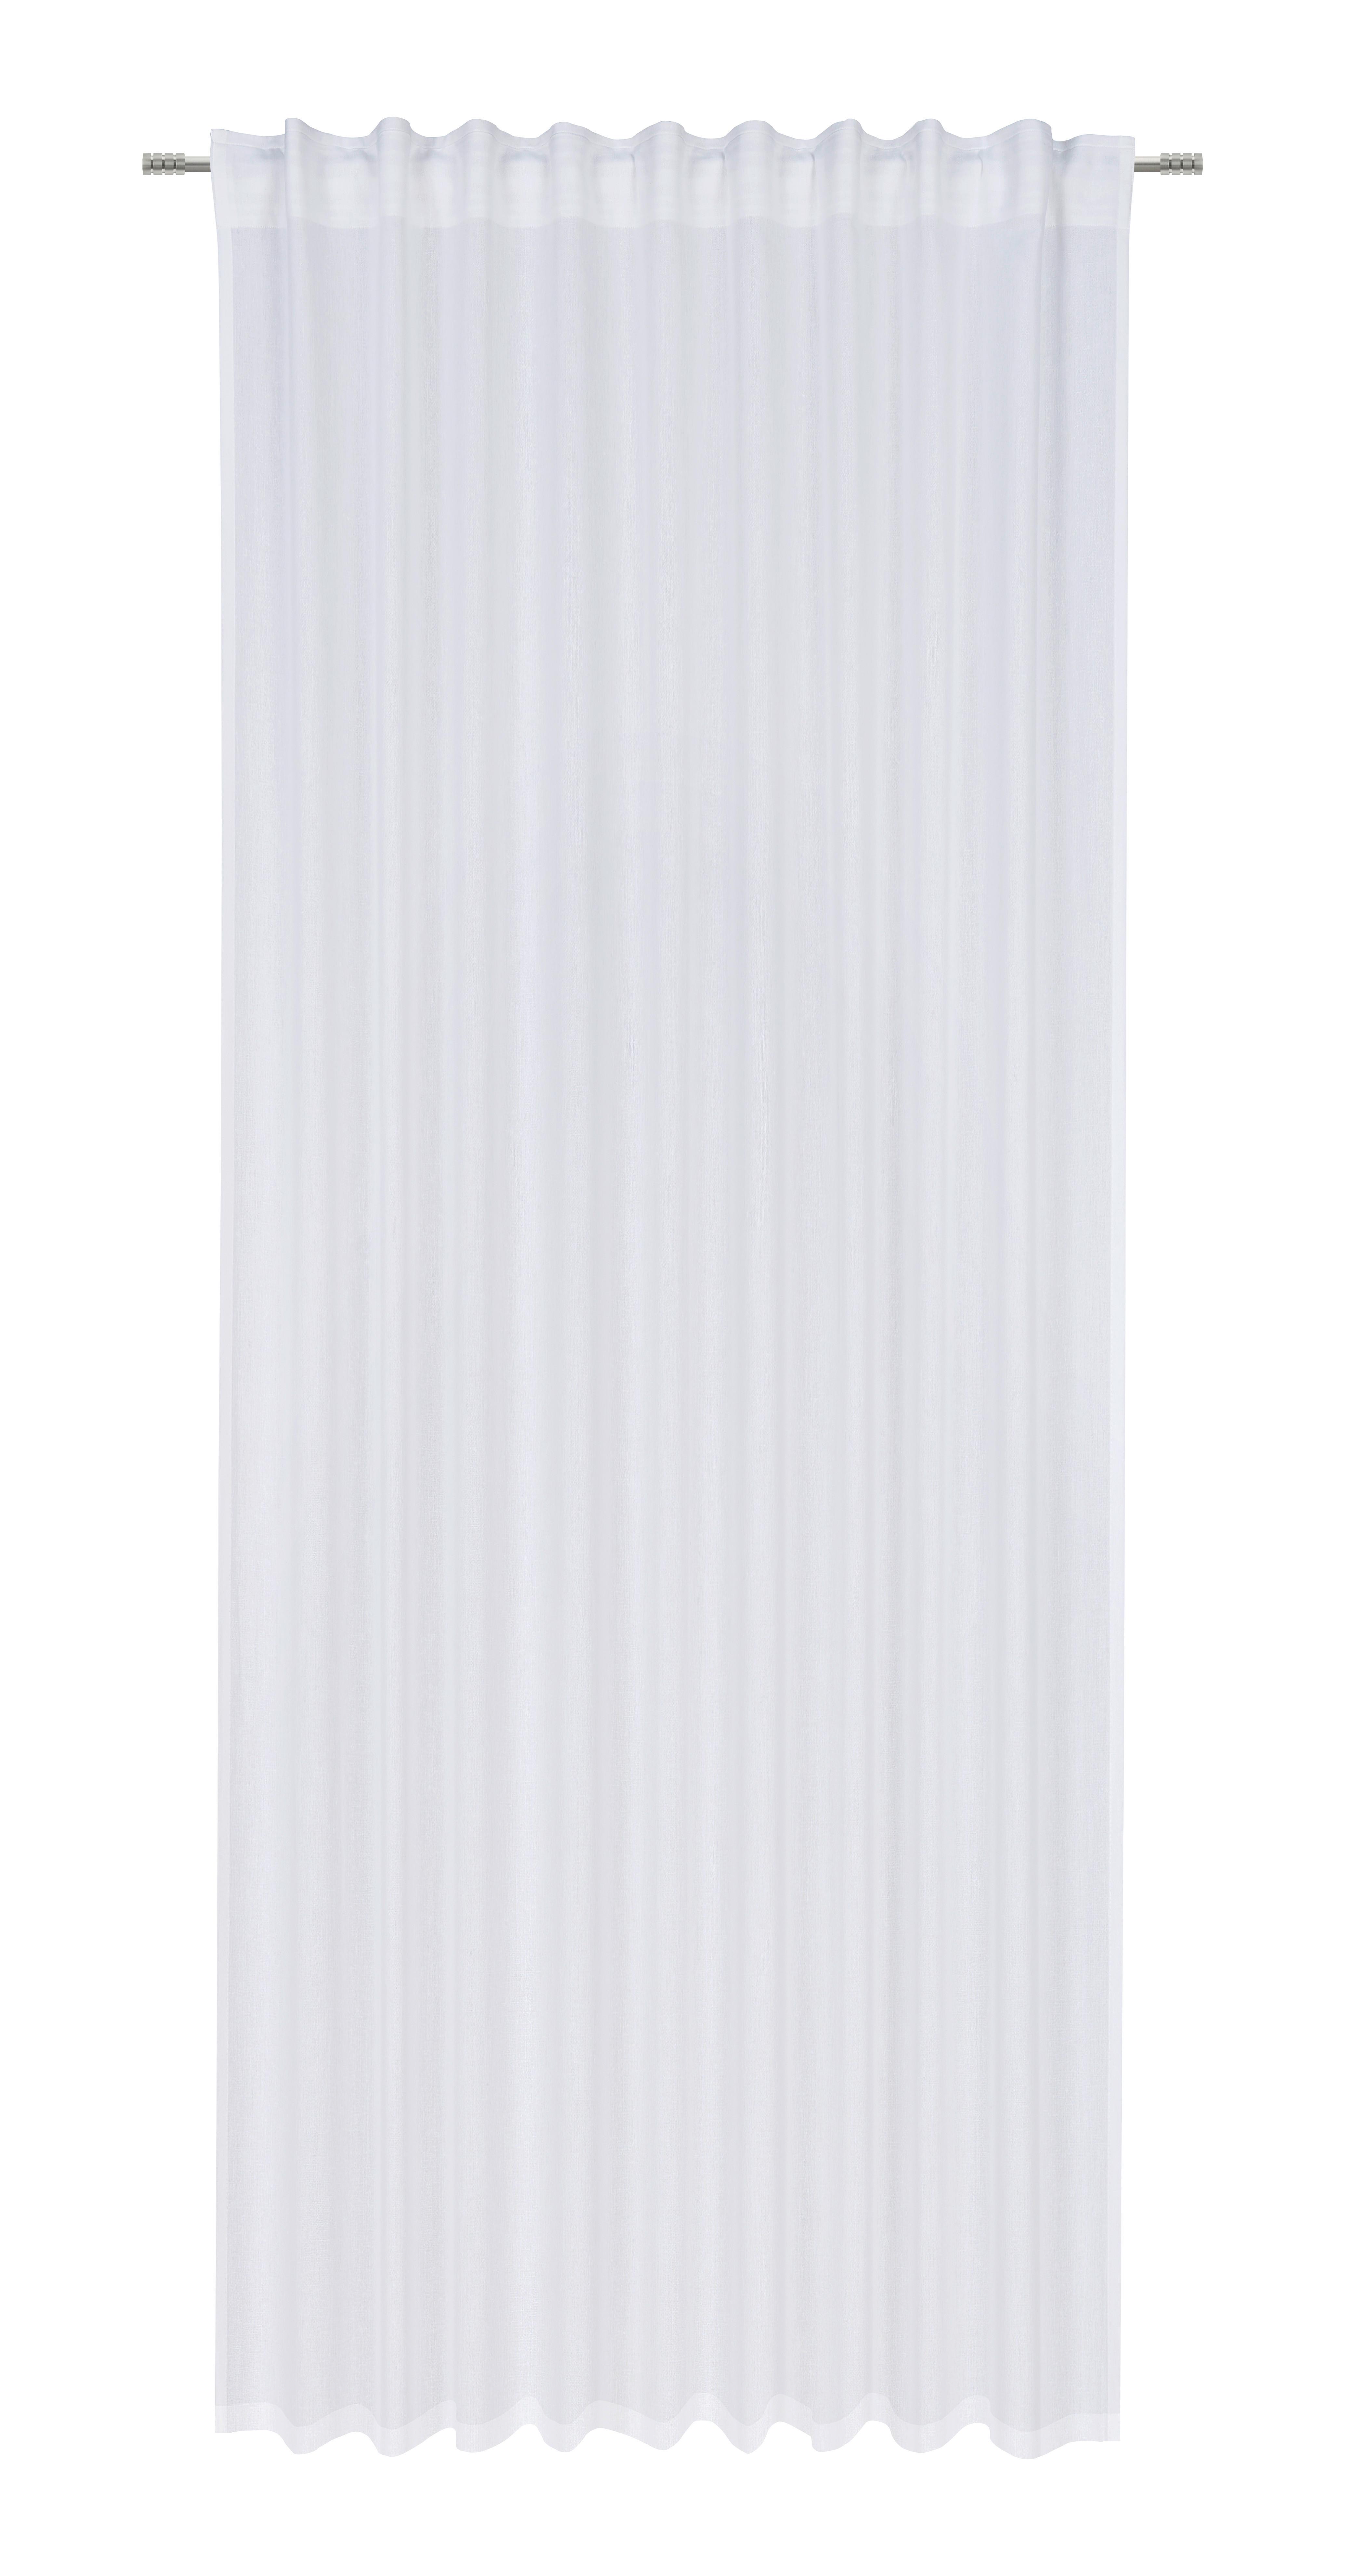 GOTOVA ZAVJESA SILA - bijela, Modern, tekstil (140/255cm) - Modern Living